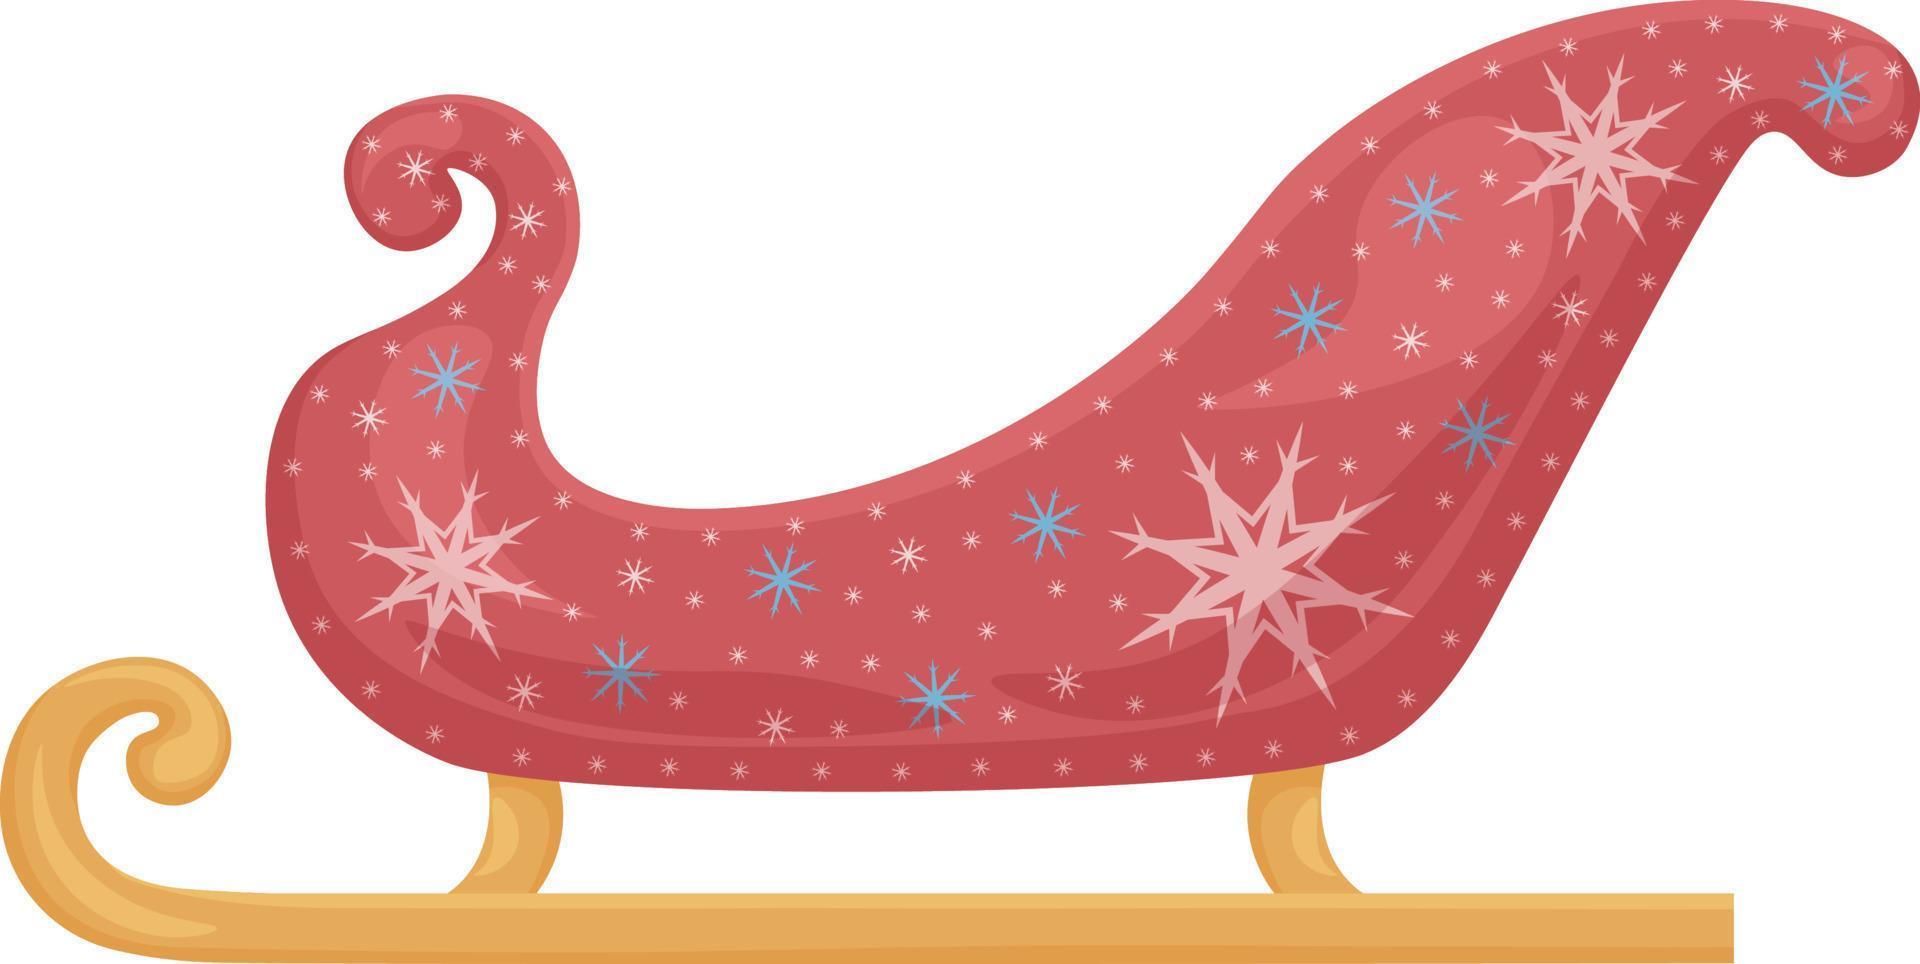 trineo de papa noel. el trineo rojo brillante de Papá Noel decorado con  copos de nieve blancos y azules. transporte navideño de santa claus.  ilustración vectorial aislada en un fondo blanco 14799132